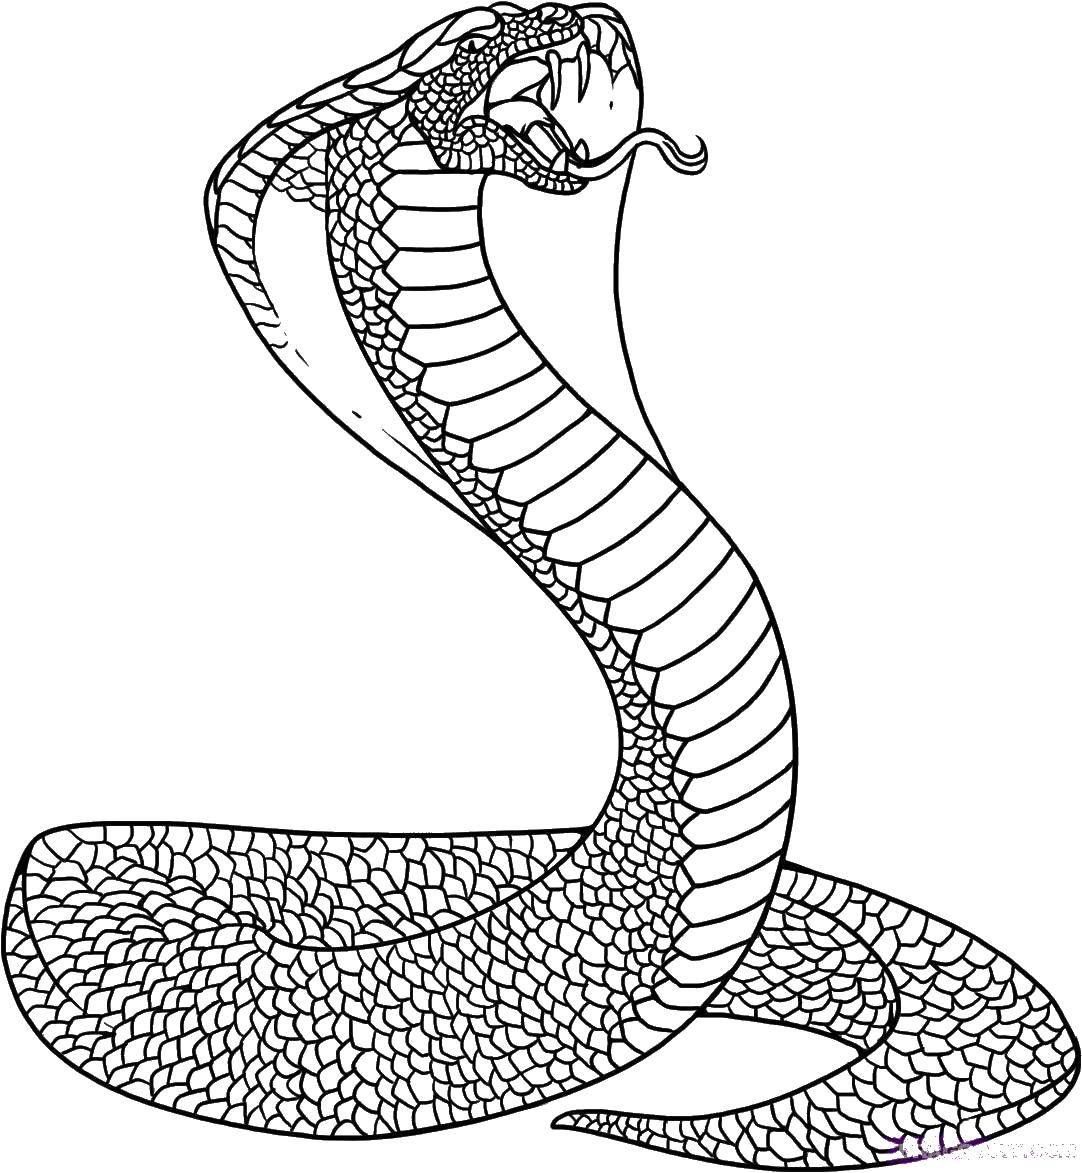 Раскраска змеи для детей (развлечение)